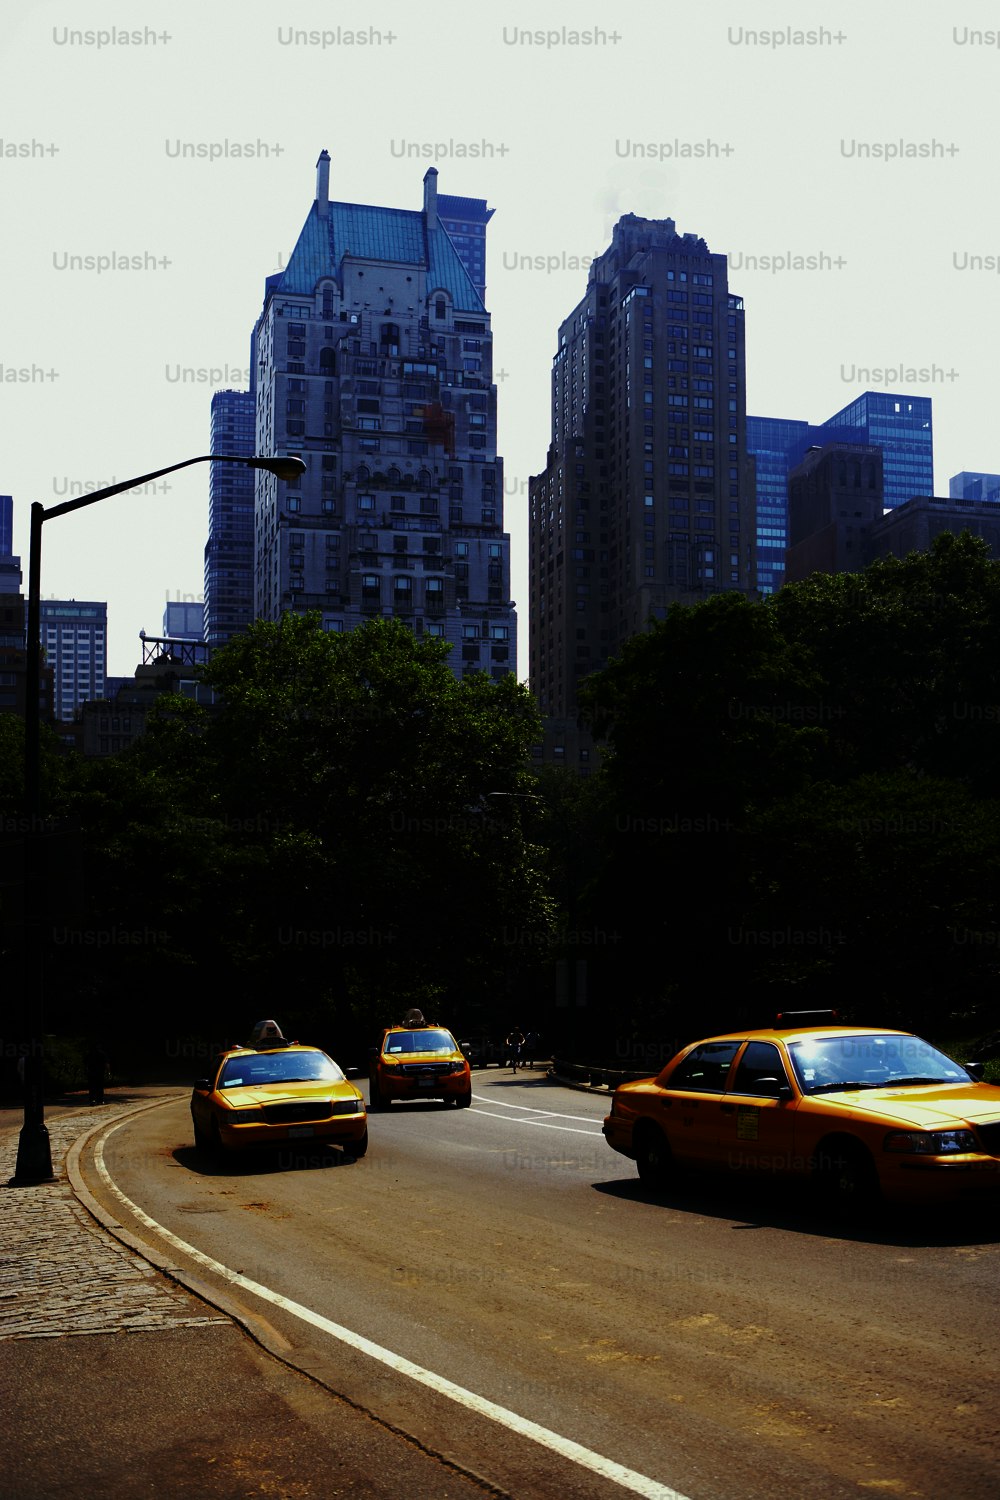 Un groupe de taxis descendant une rue à côté de grands immeubles